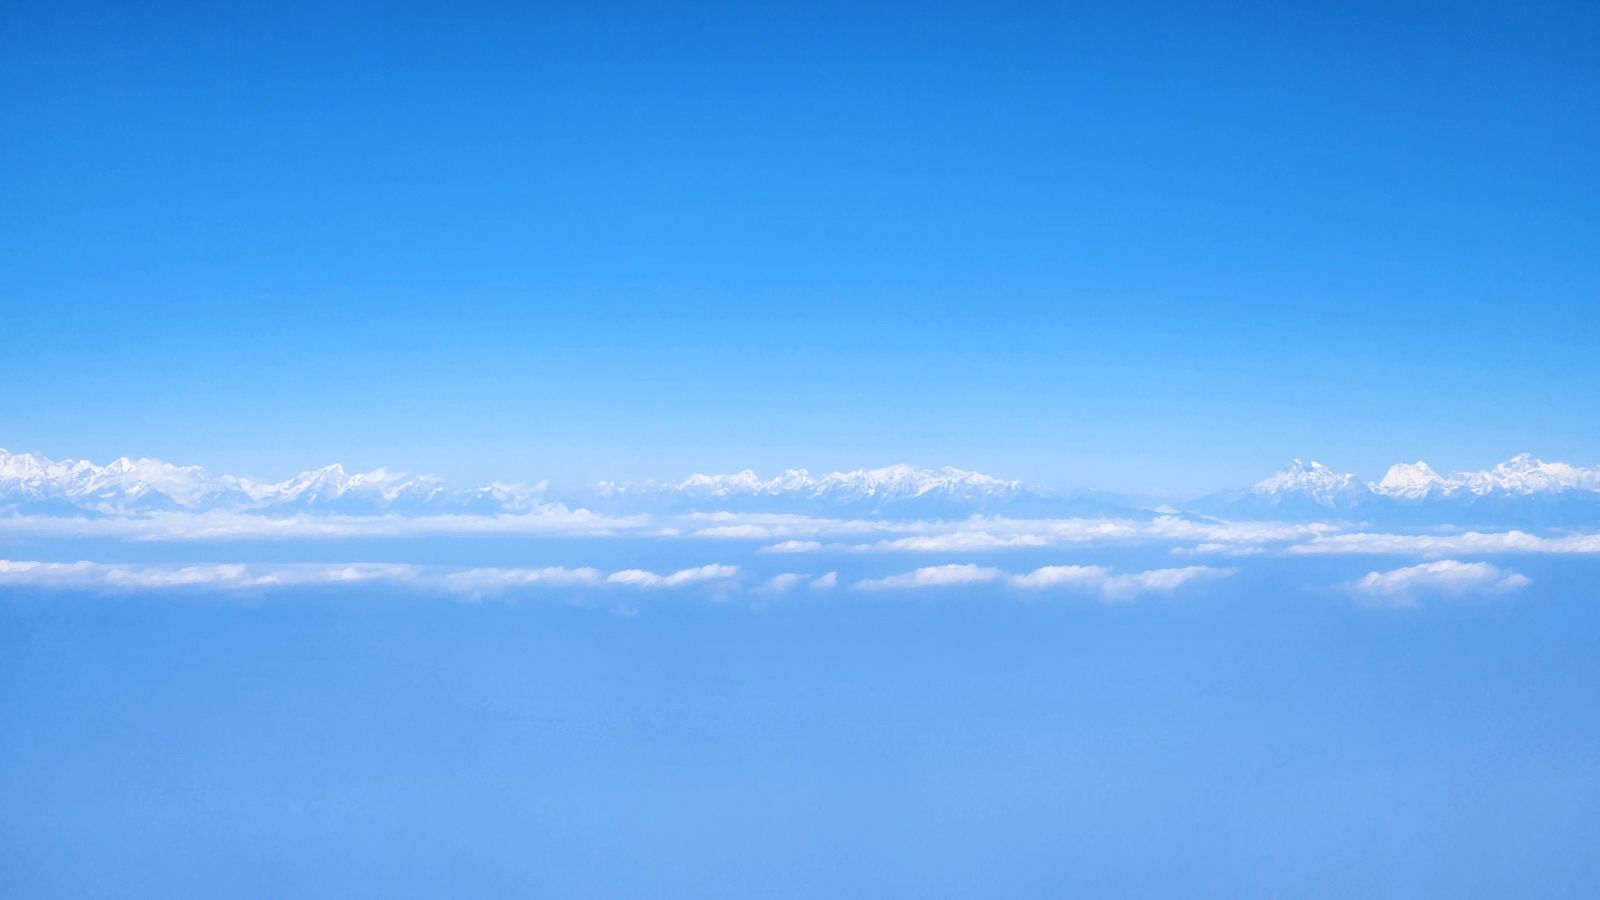 View from Kathmandu flight